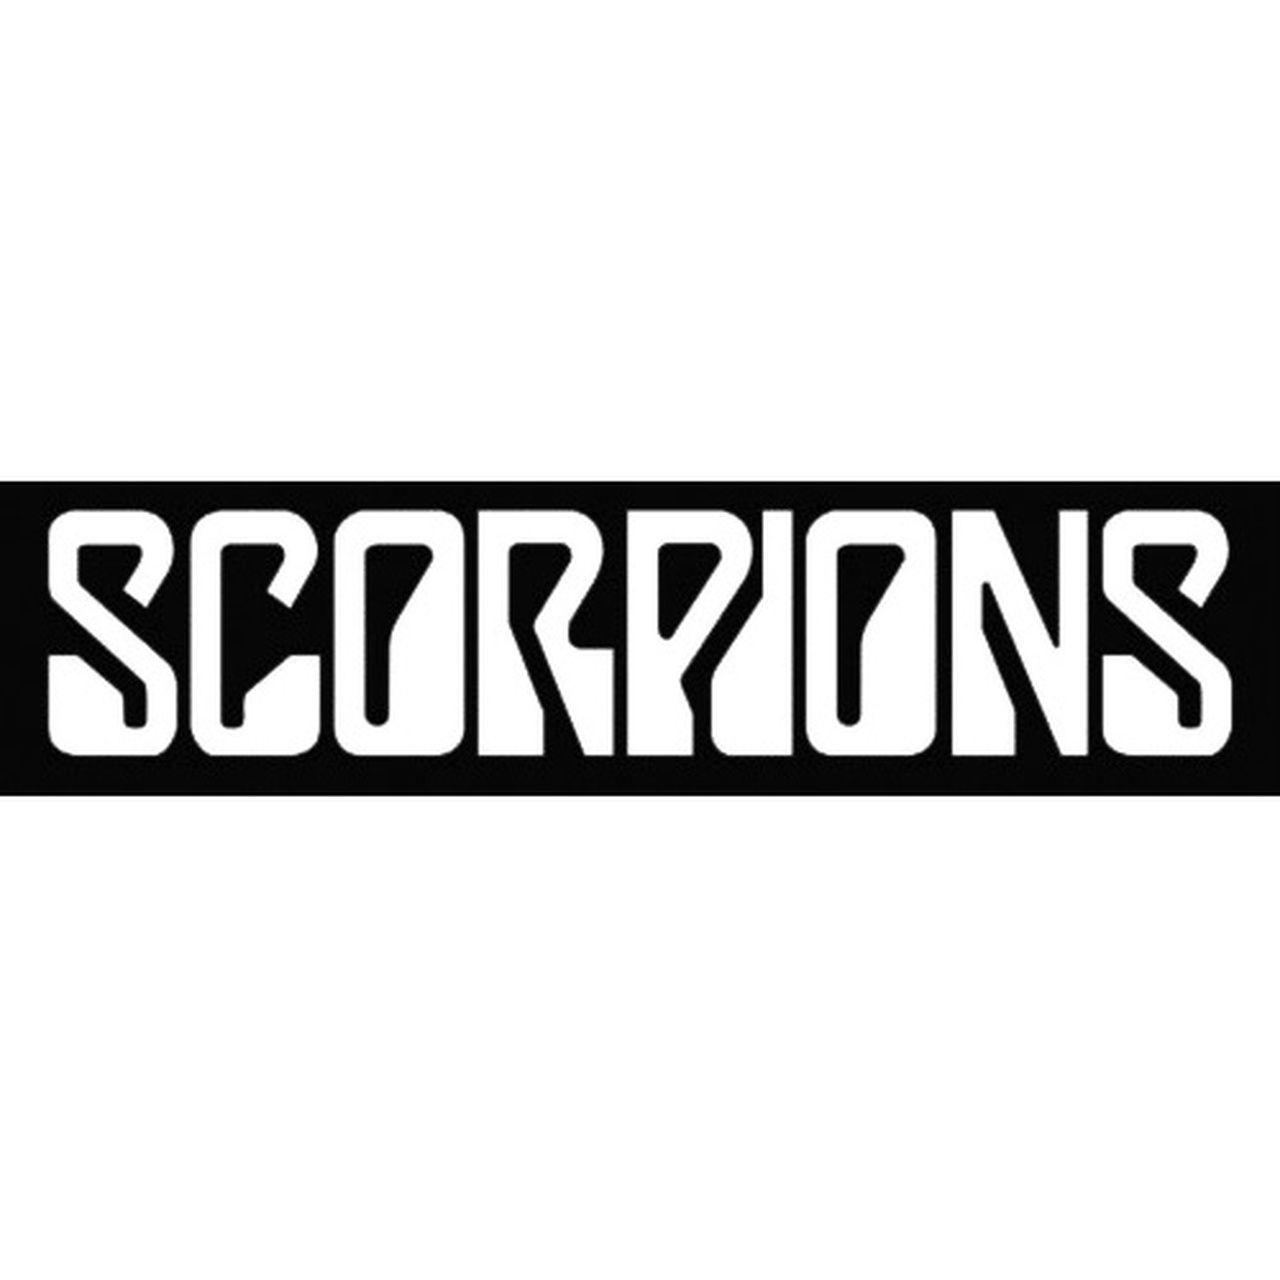 Scorpions Logo - Scorpions Logo Vinyl Decal Sticker